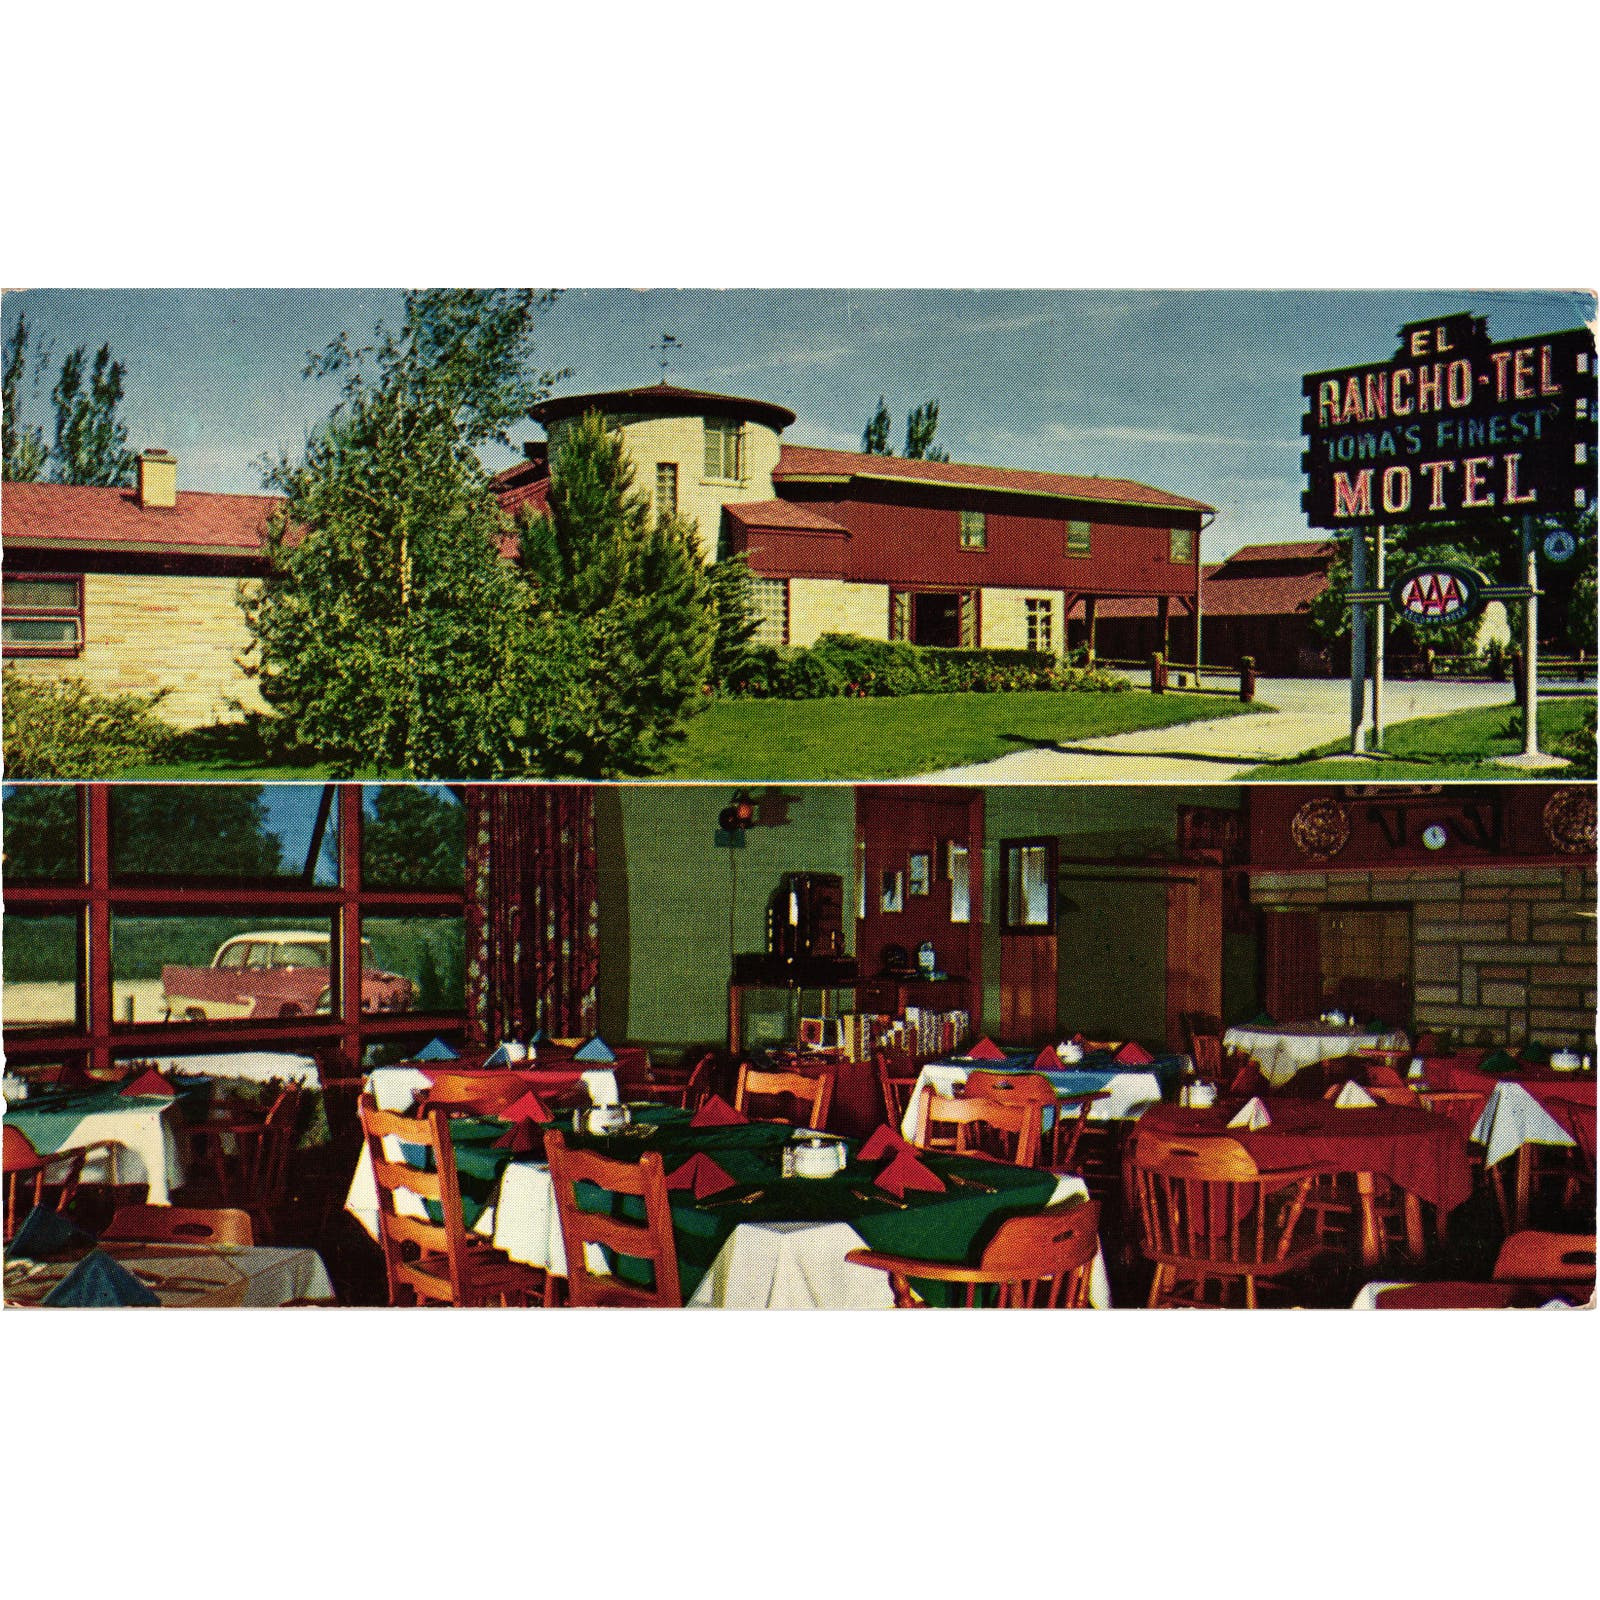 El Rancho Tel Motel Villa Restaurant Postcard Davenport Iowa Posted 1957